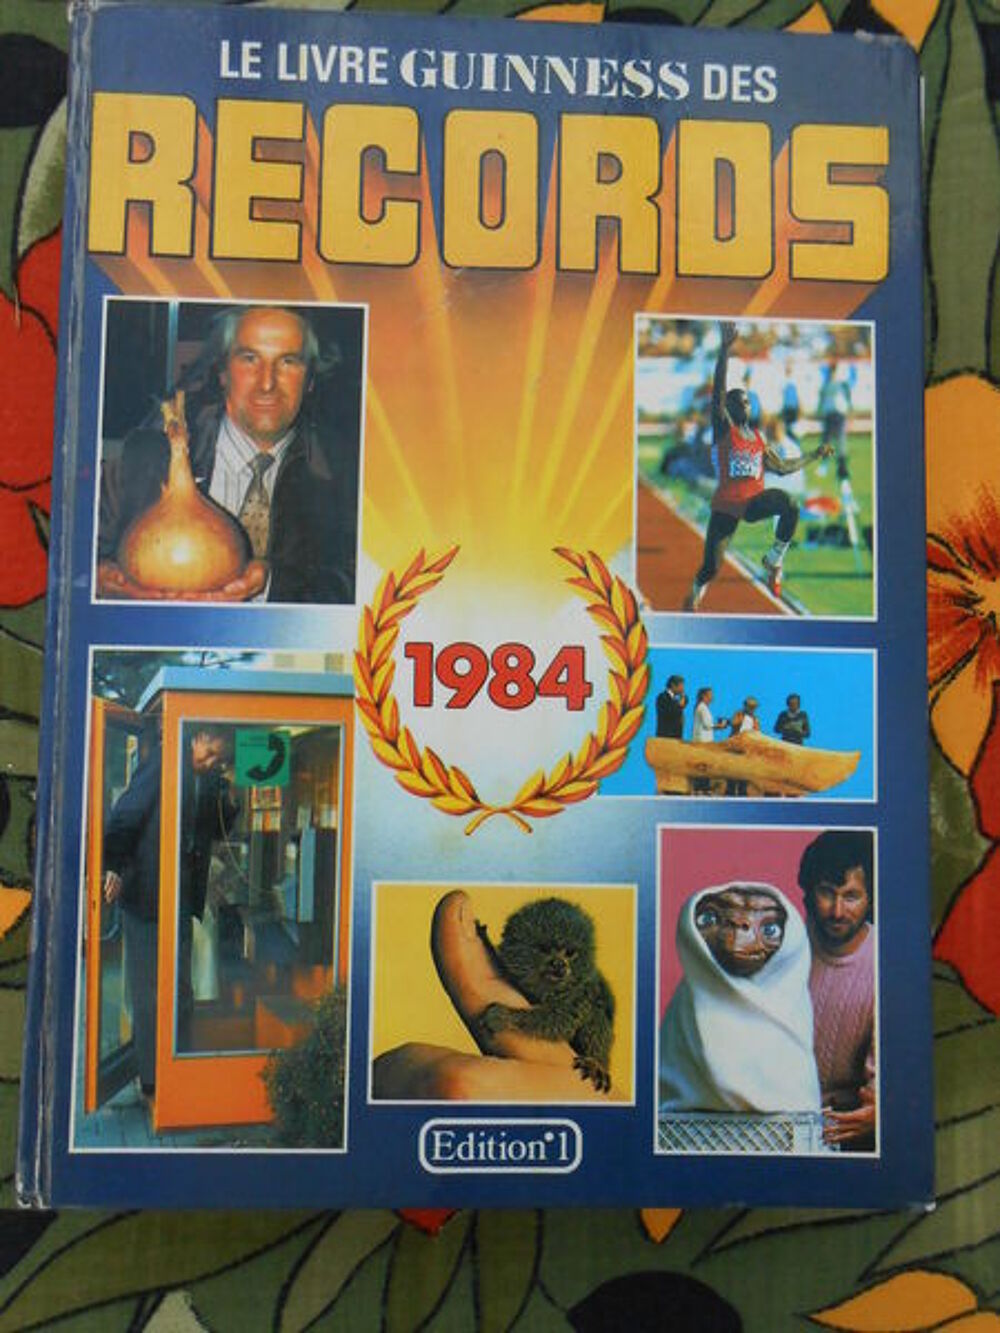 Le livre guinness des records 1984 Livres et BD